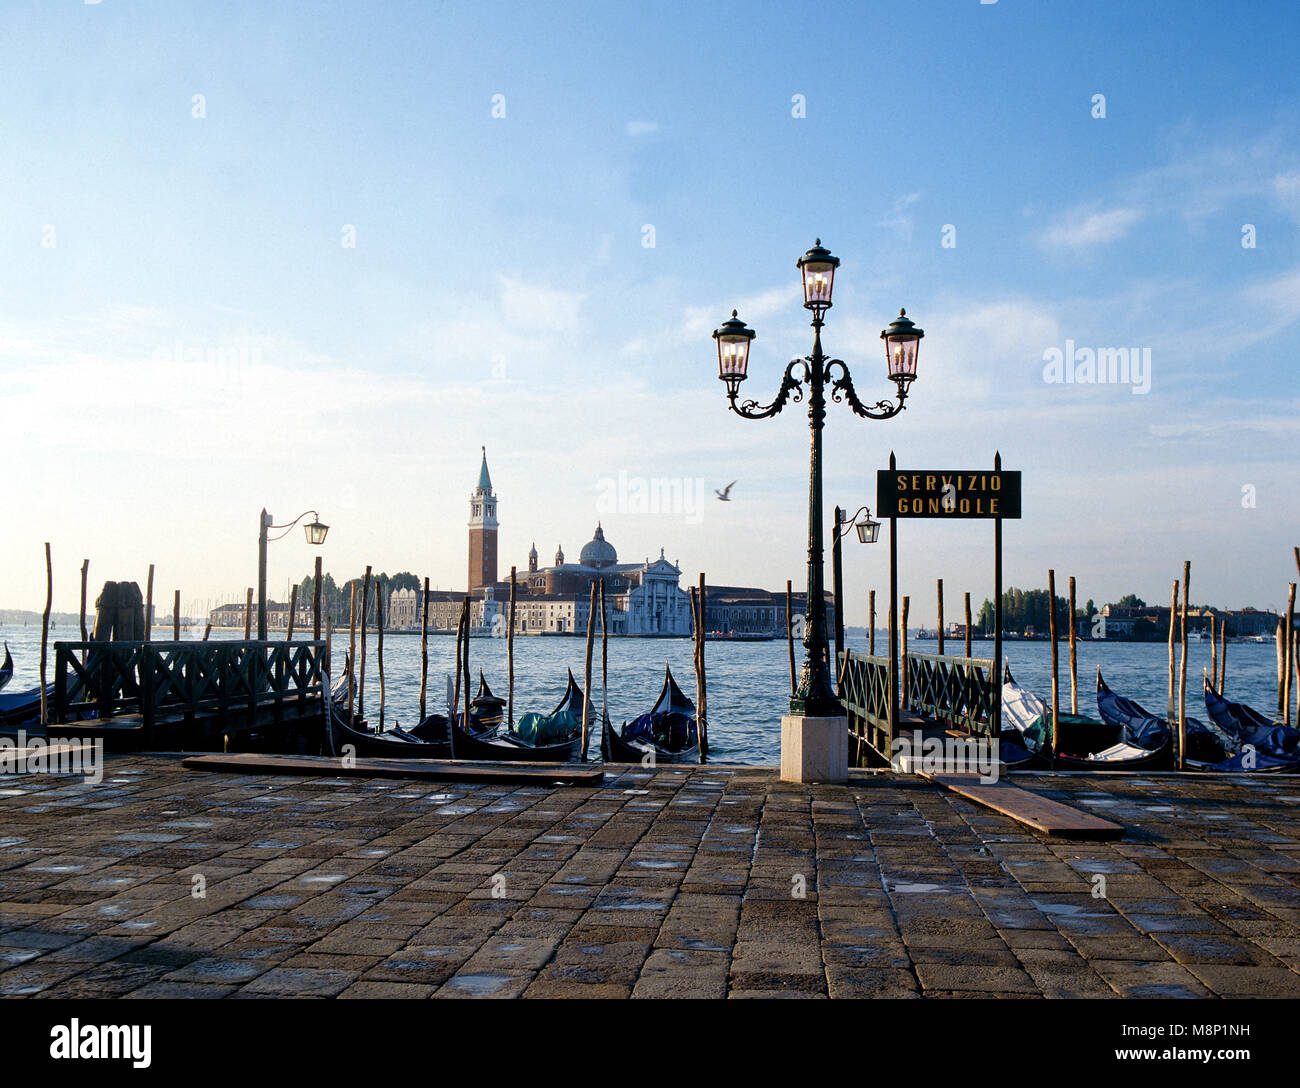 Venice Italy early morning Stock Photo